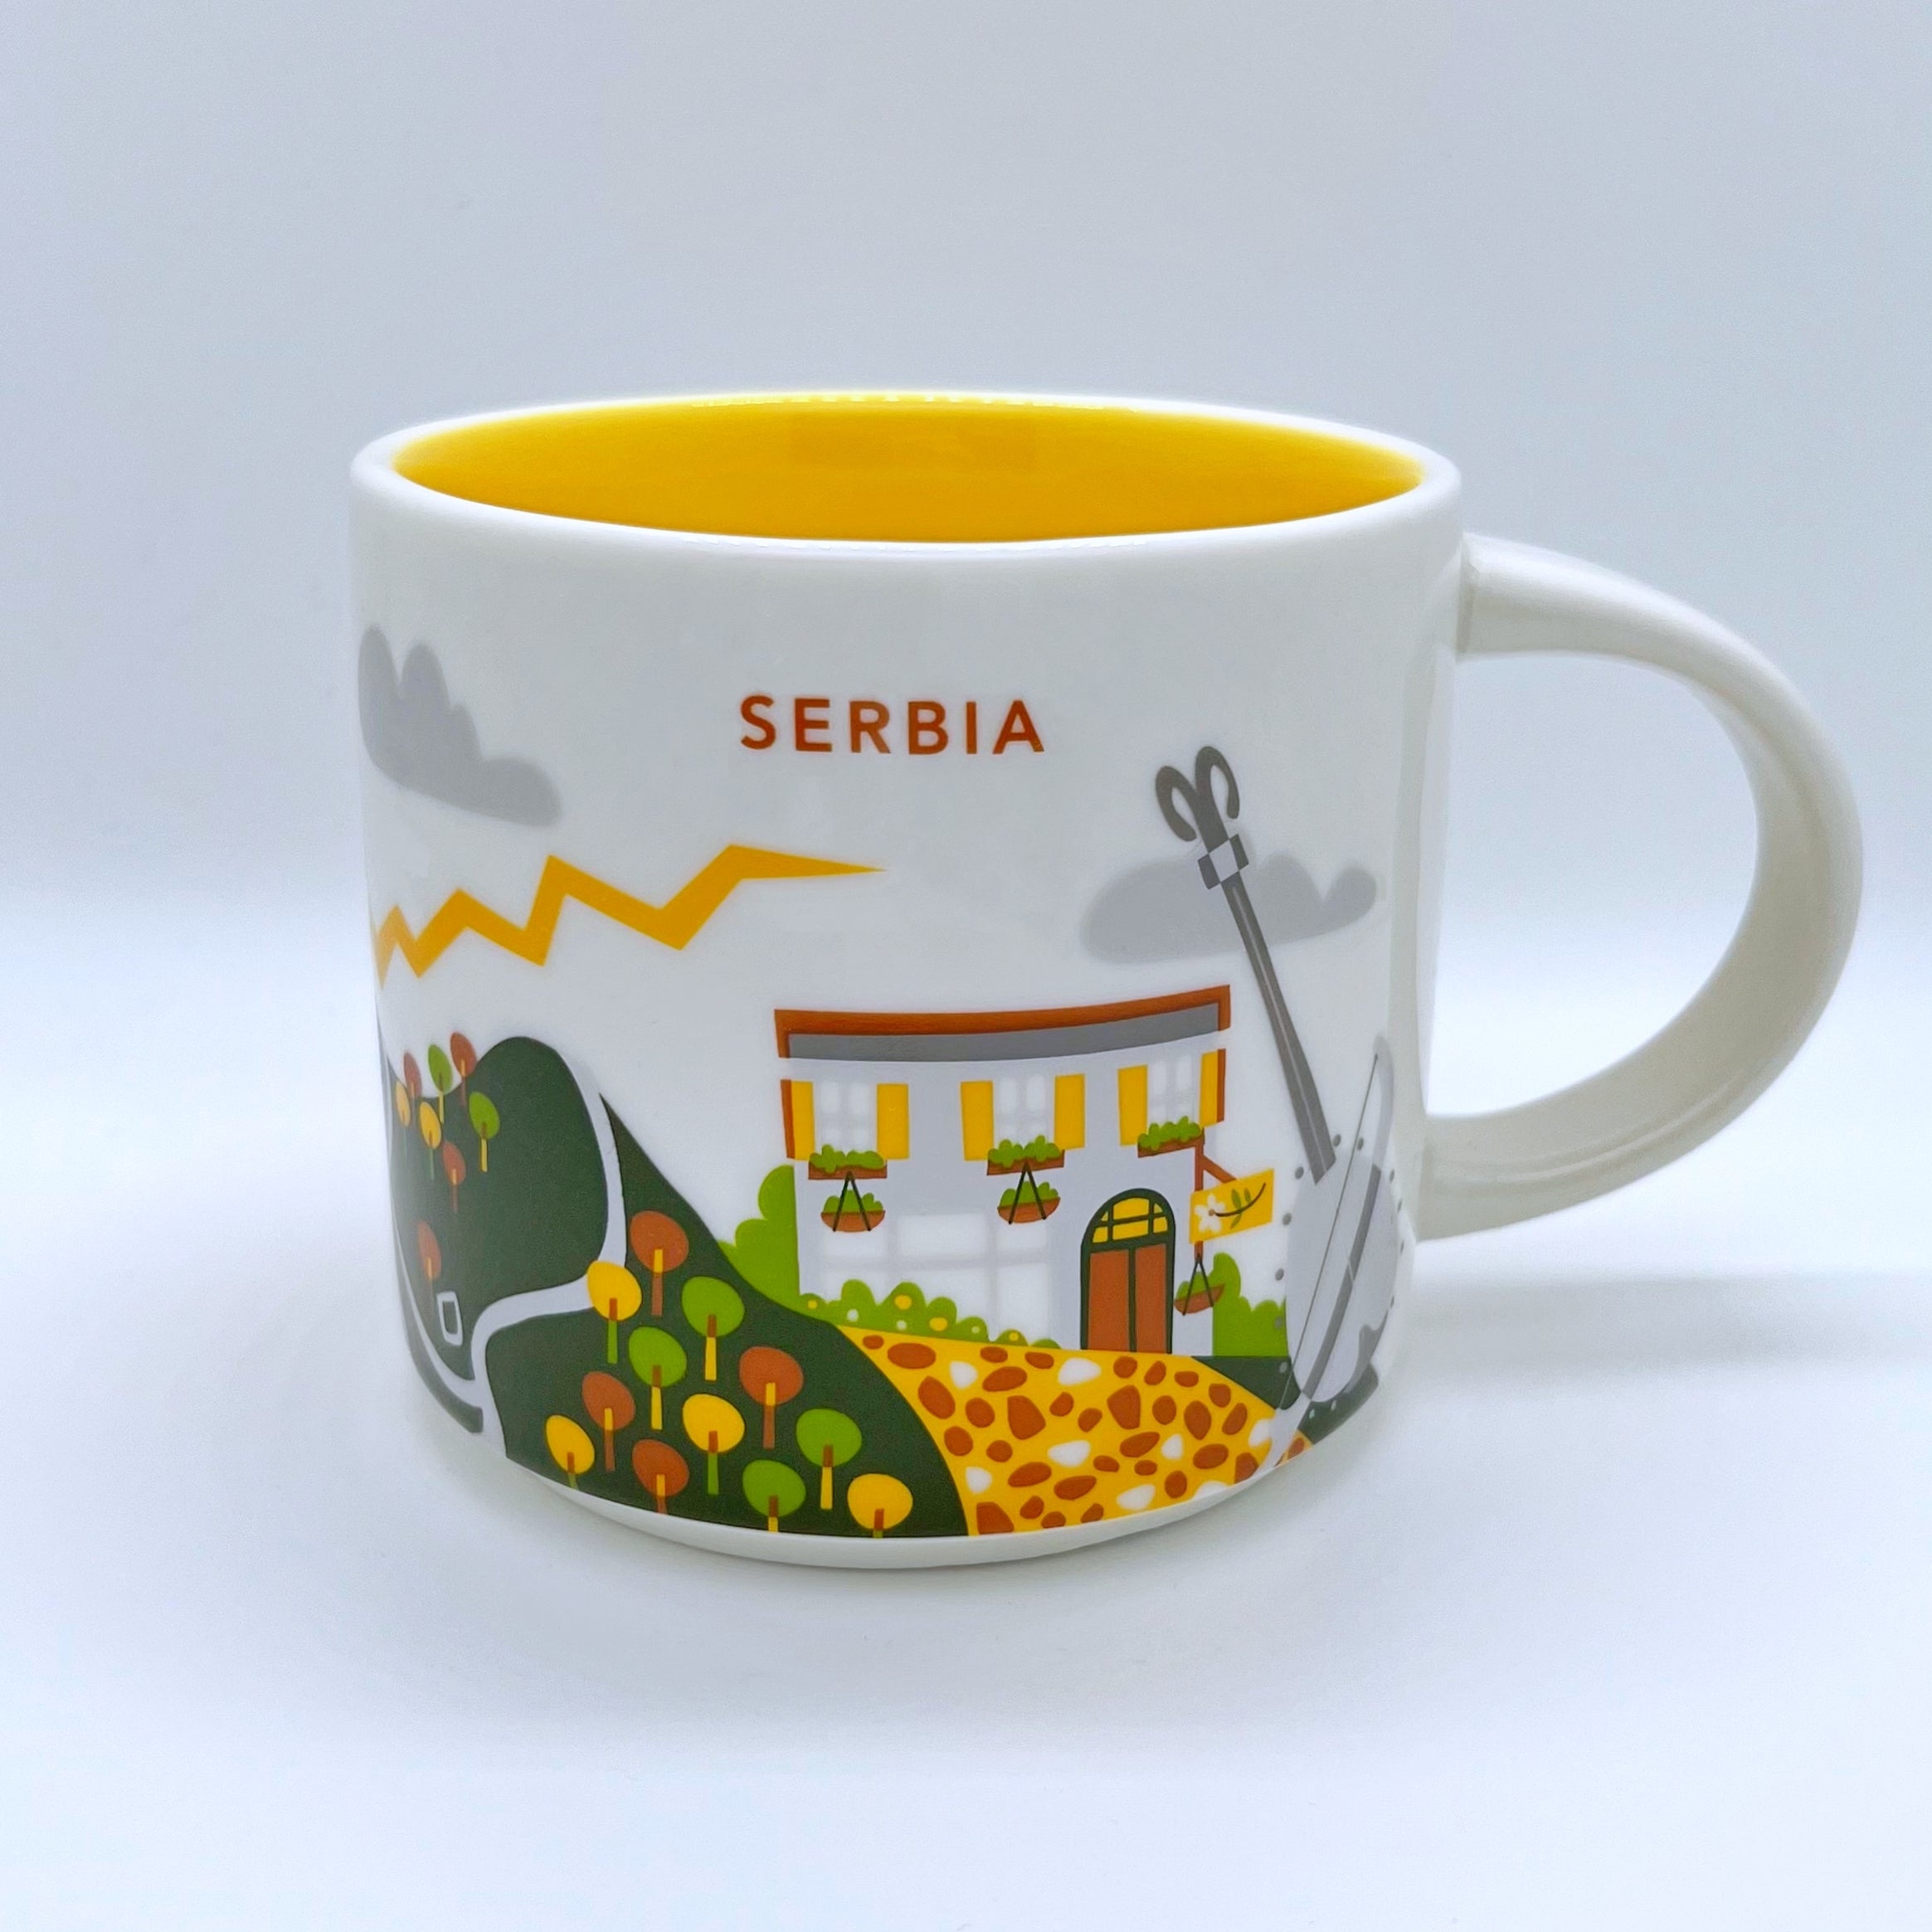 Kaffee Tee und Cappuccino Tasse von Starbucks mit gemalten Bildern aus dem Land Serbien